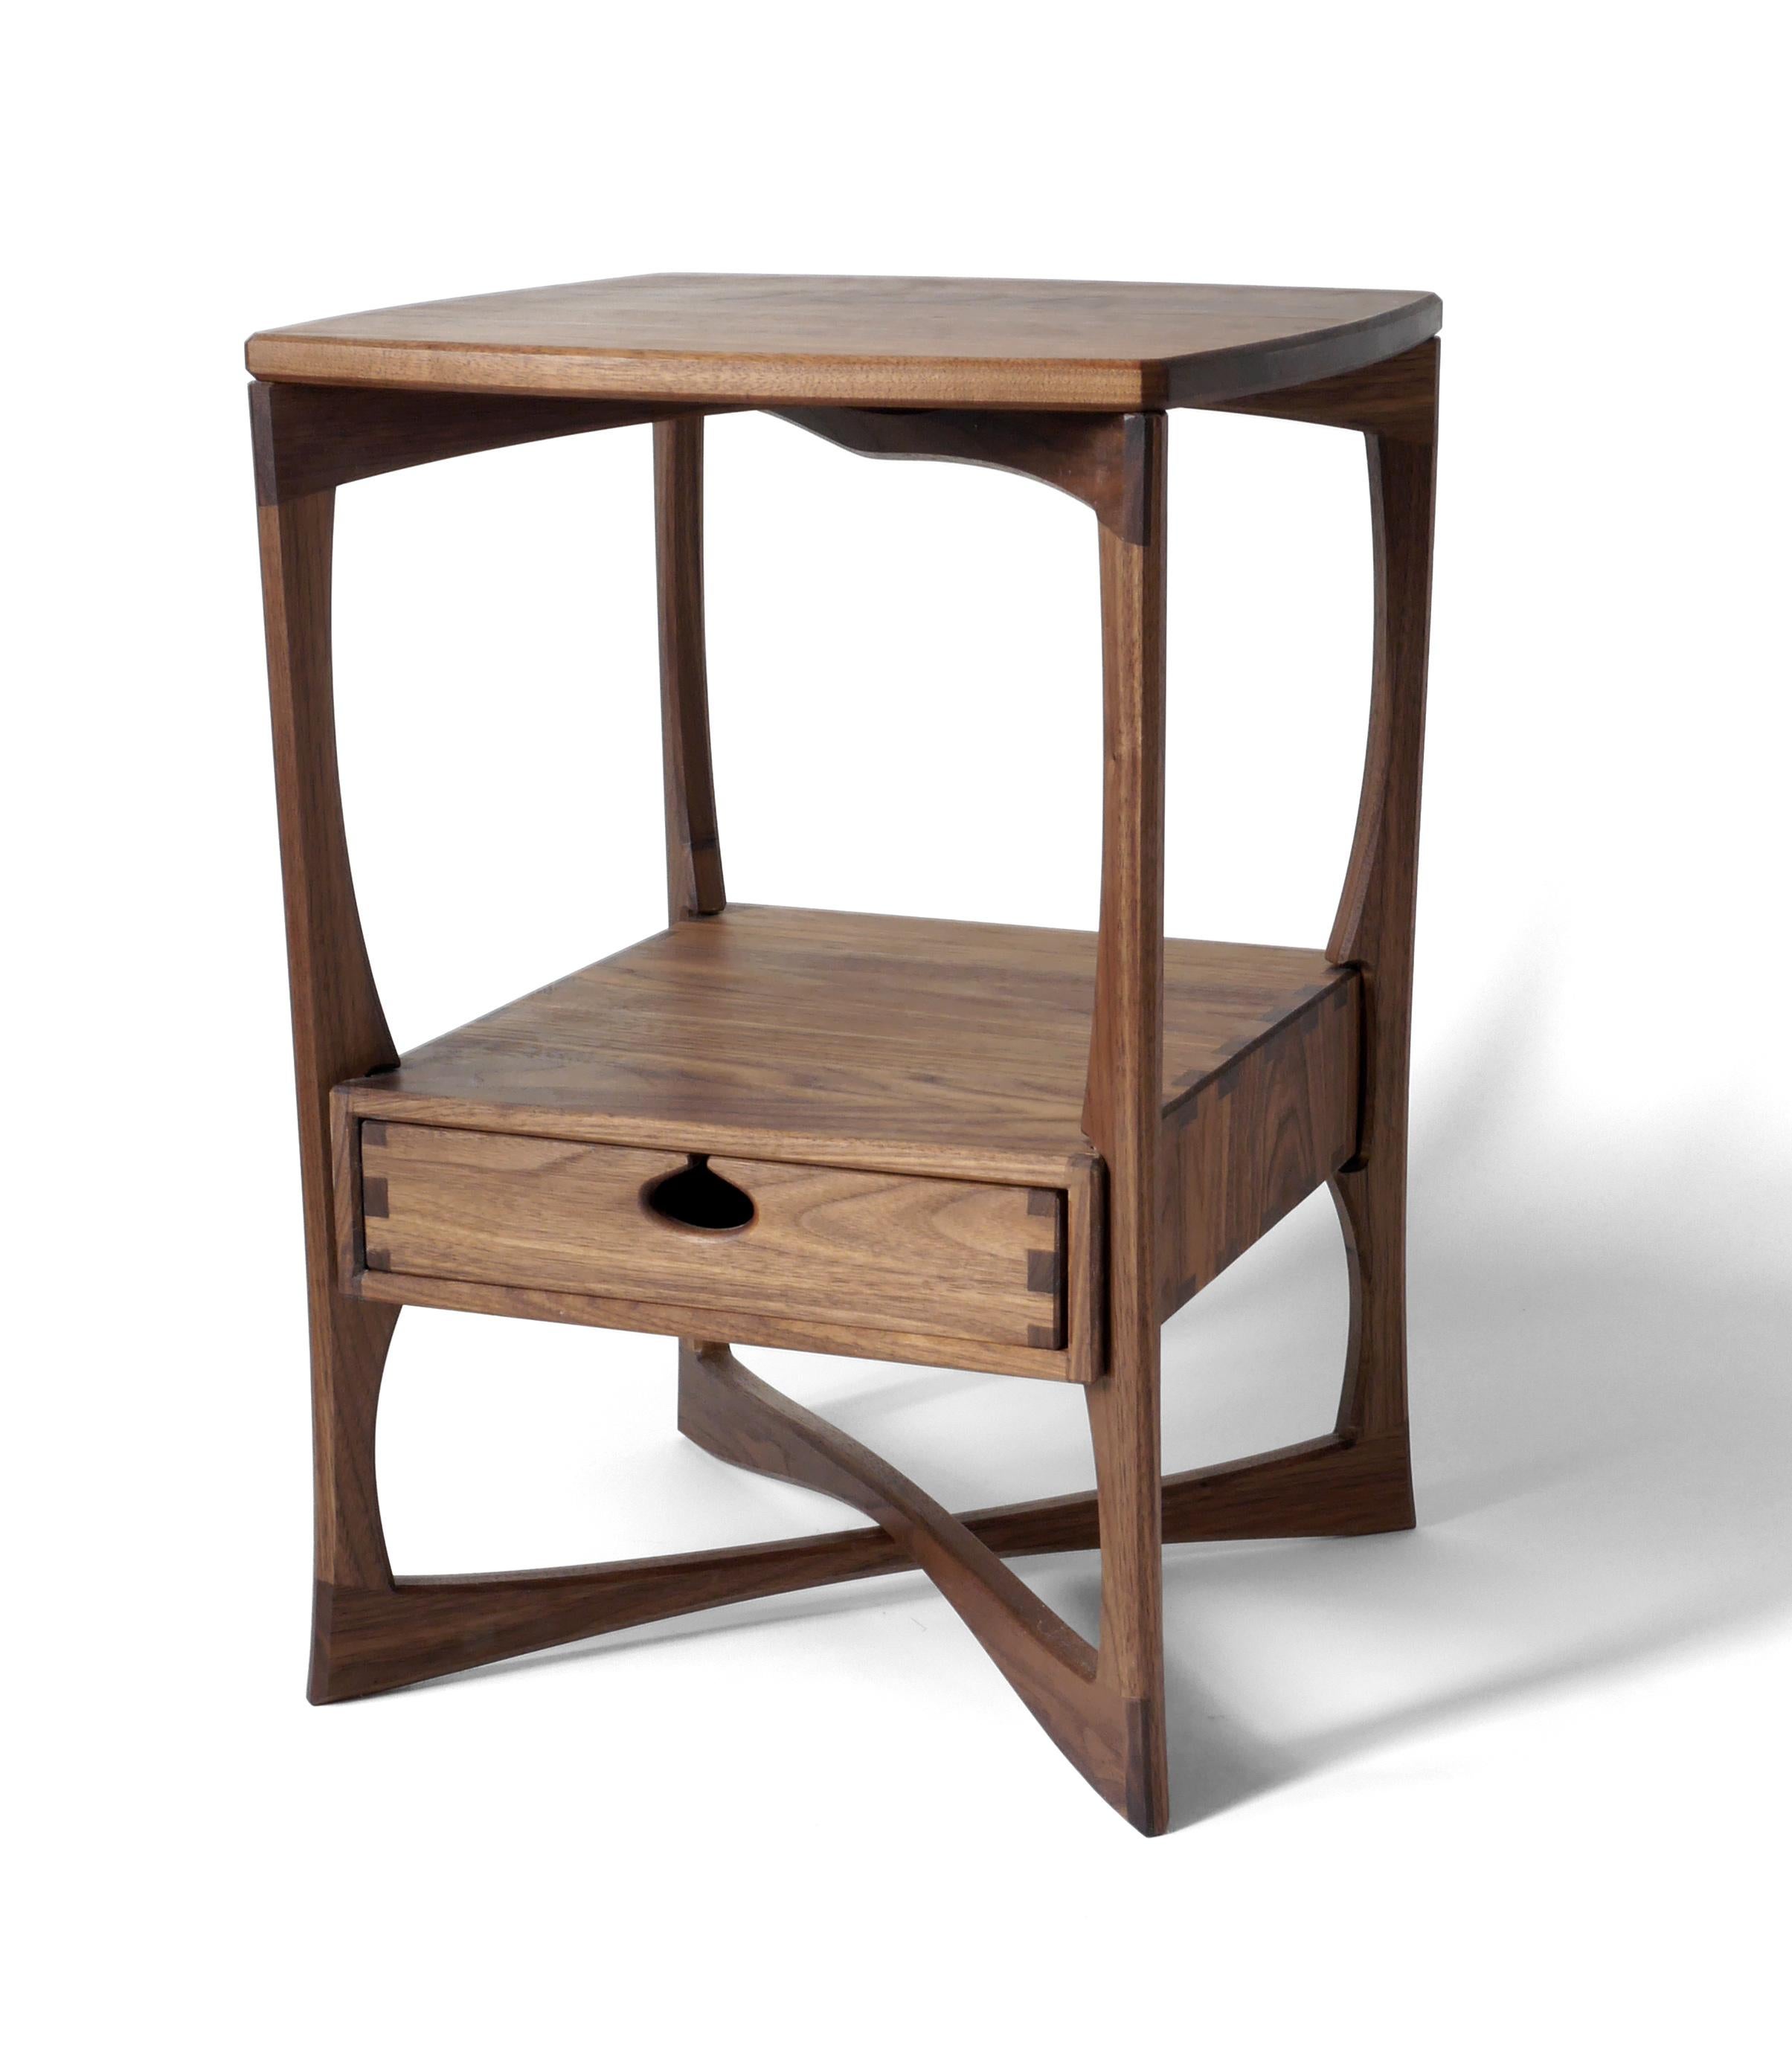 La table d'appoint Roke, riche en détails, est fabriquée en bois dur massif de noyer noir et comporte un seul tiroir monté sur des glissières en bois dans une boîte à tiroirs traditionnelle. Il est construit avec des menuiseries apparentes qui ont